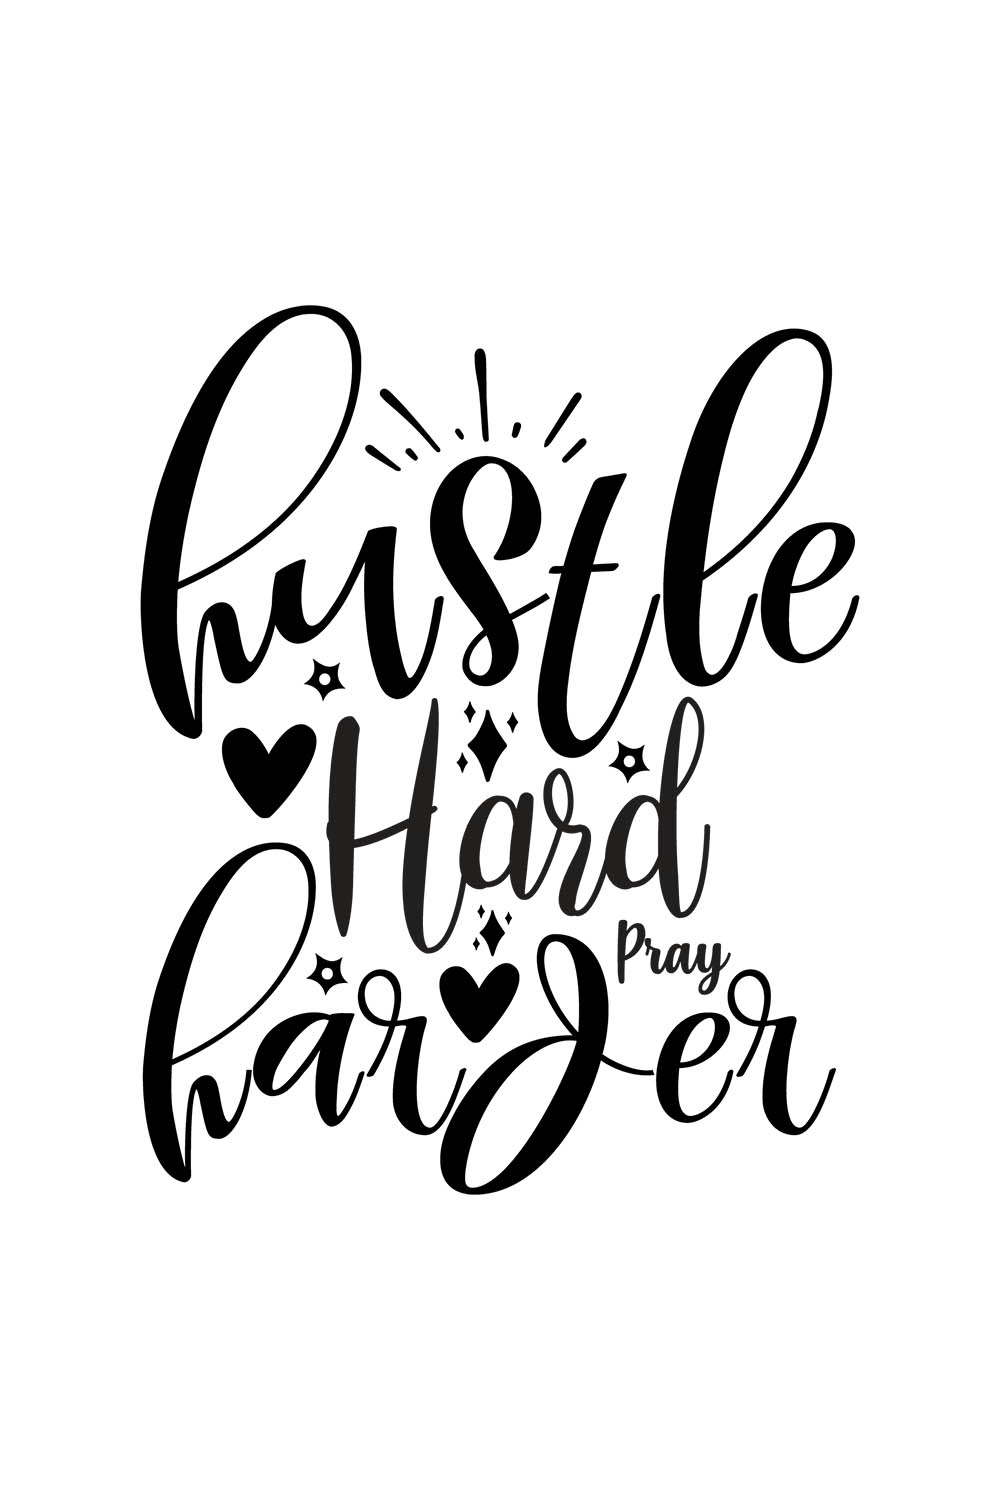 Image with enchanting black lettering for Hustle Hard Pray Harder prints.